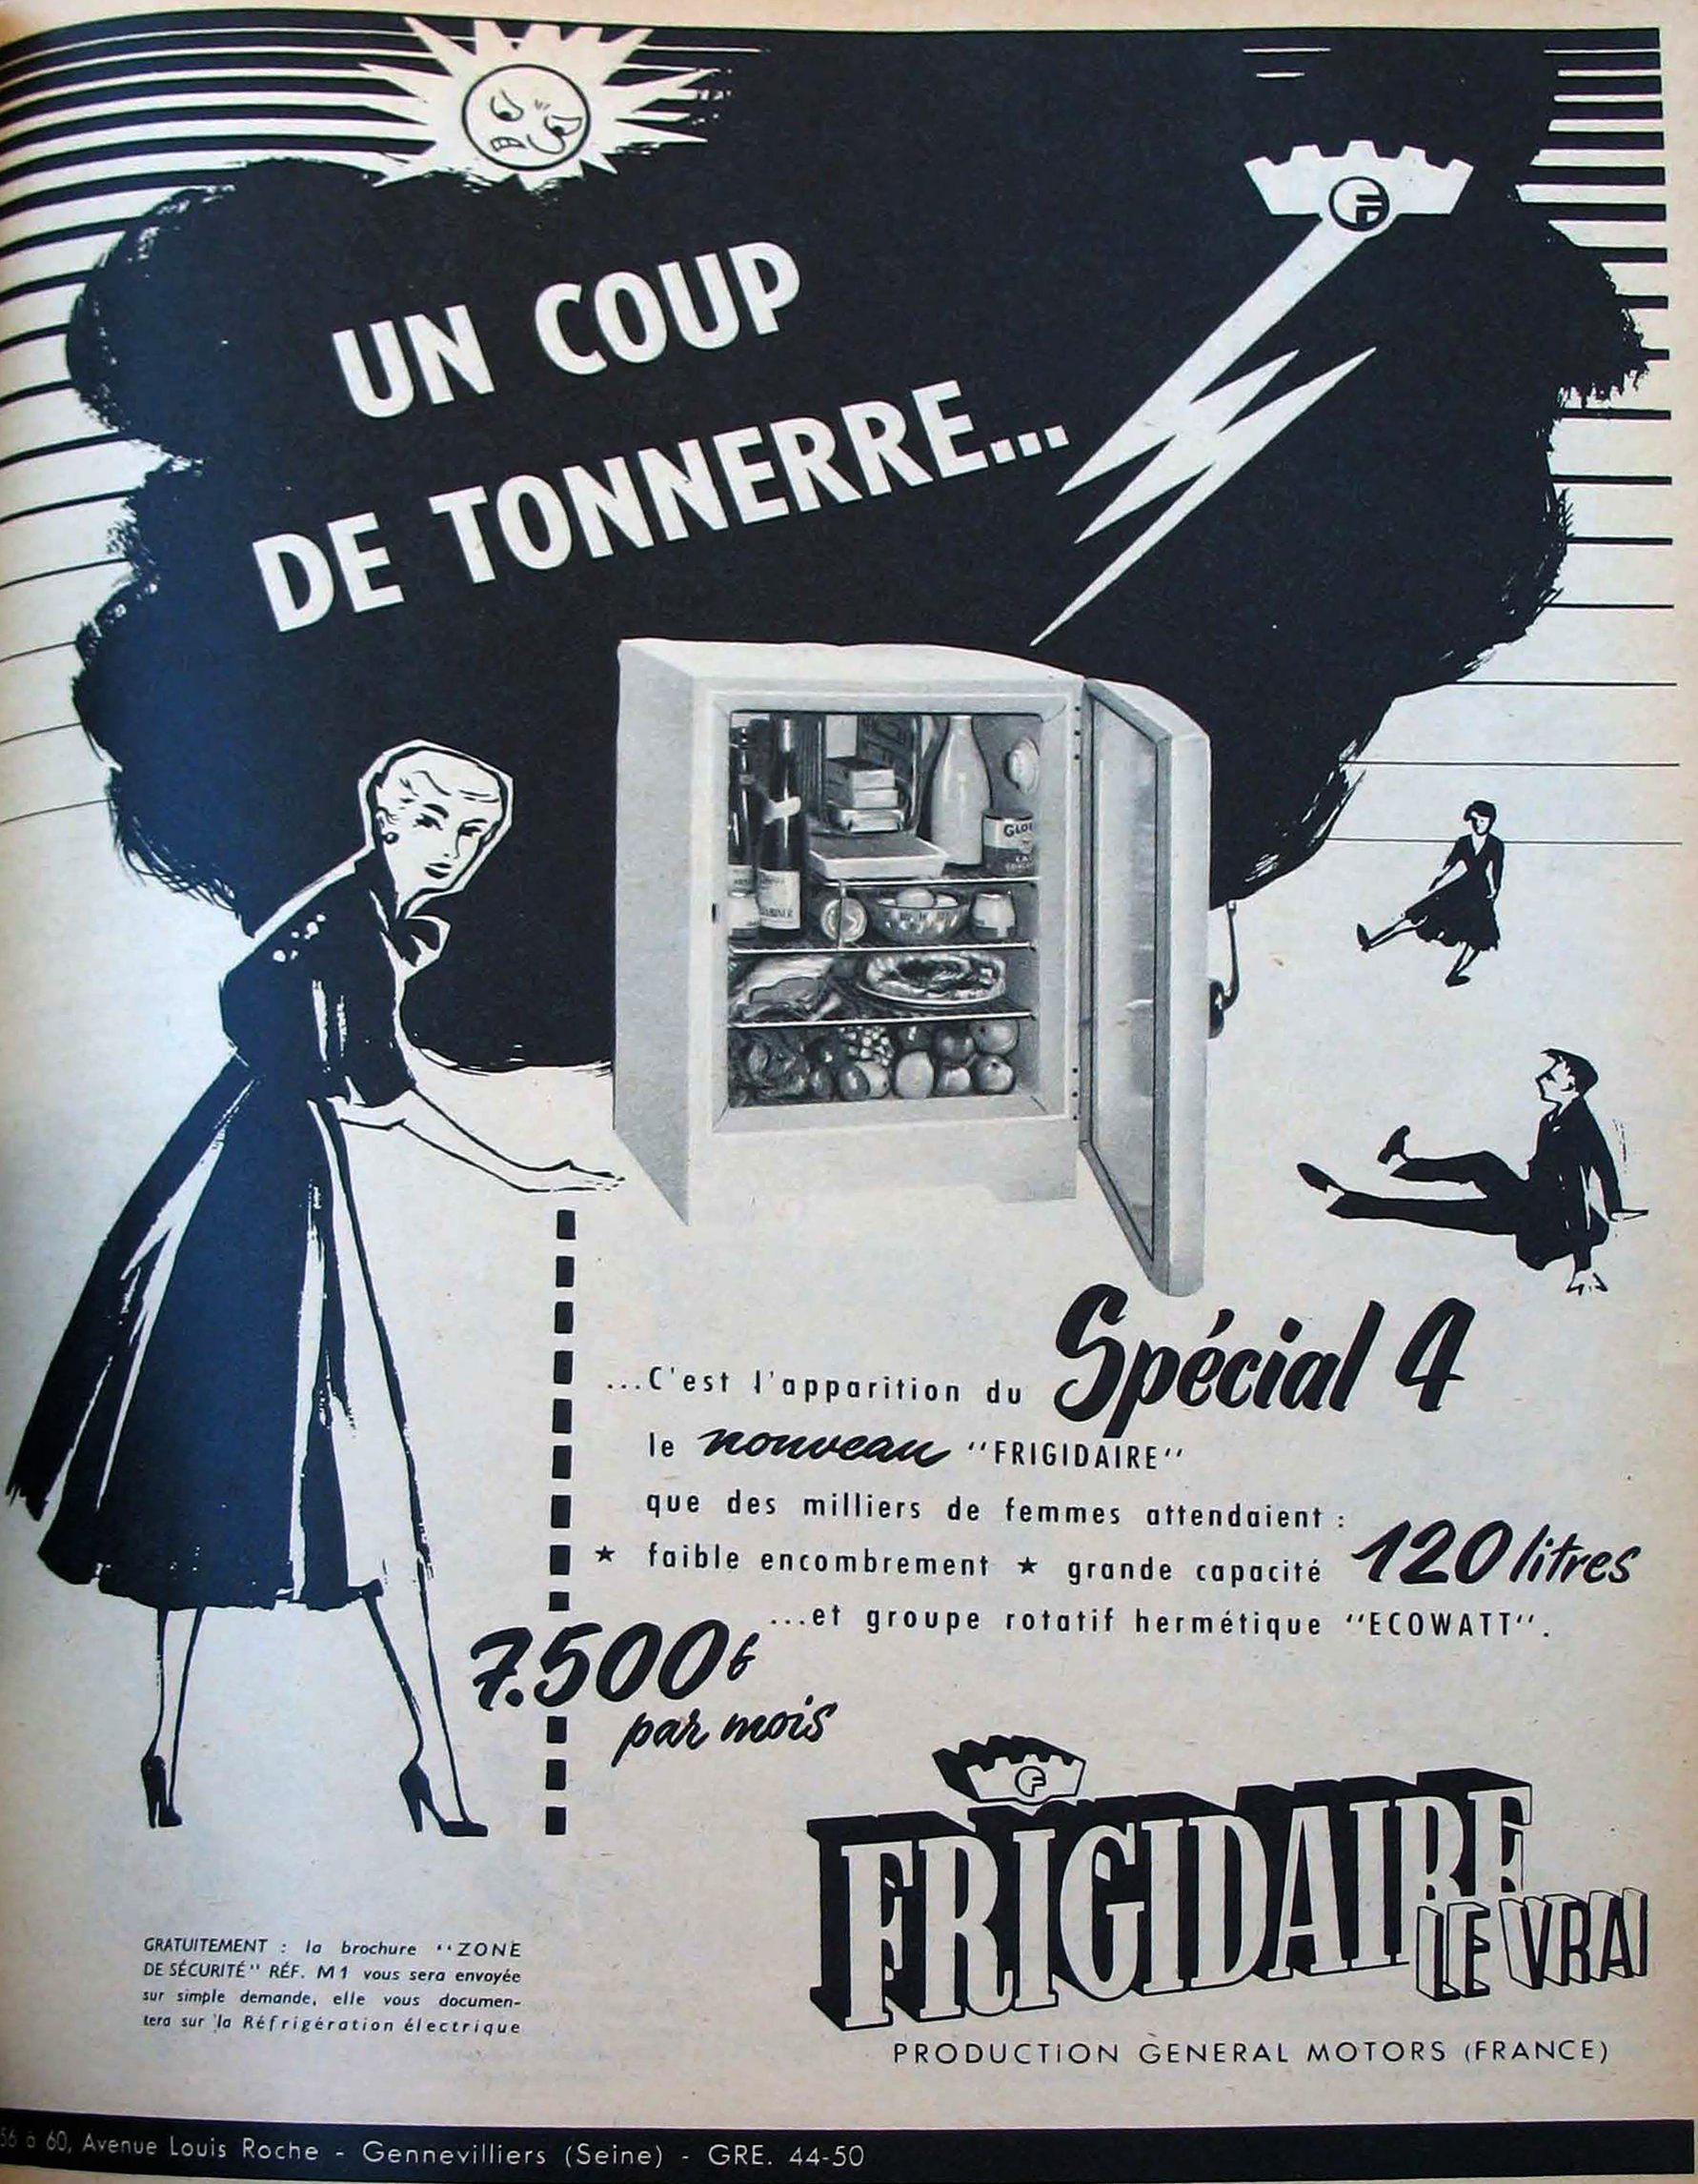 Fig. 7:Auteur inconnu. 1949. «Frigidaire ad» [Publicité]
Paris Match, No. 209 (21 mars 1953): 49
